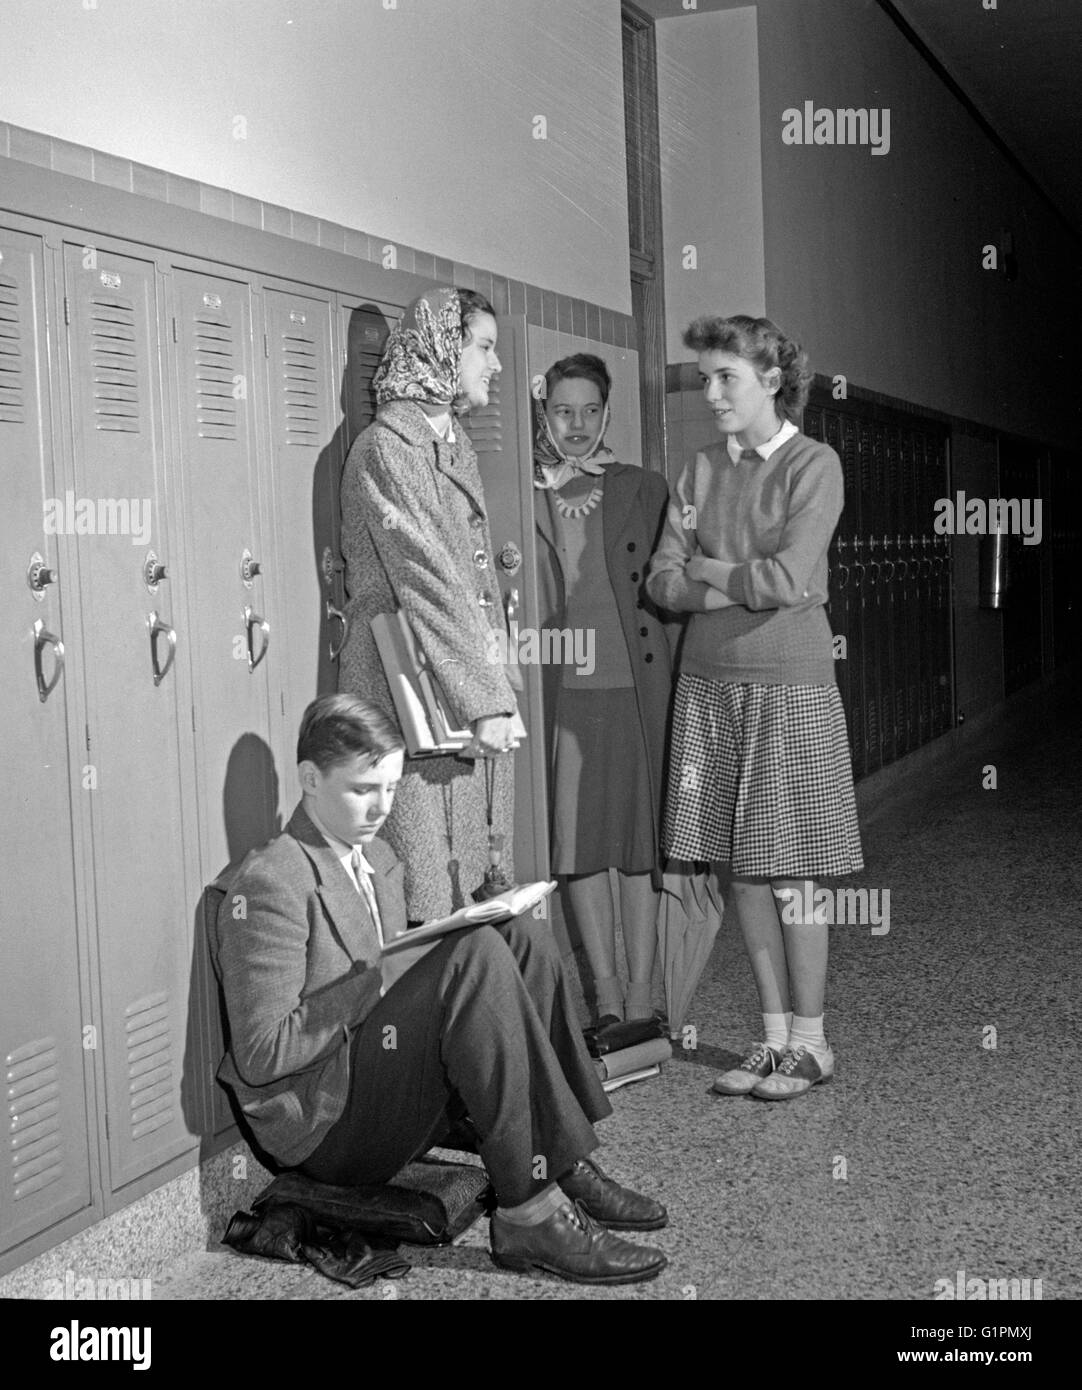 SCHÜLERINNEN UND SCHÜLER, 1943. Studenten an der Woodrow Wilson High School in Washington, D.C., Foto von Esther Bubley, 1943. Stockfoto